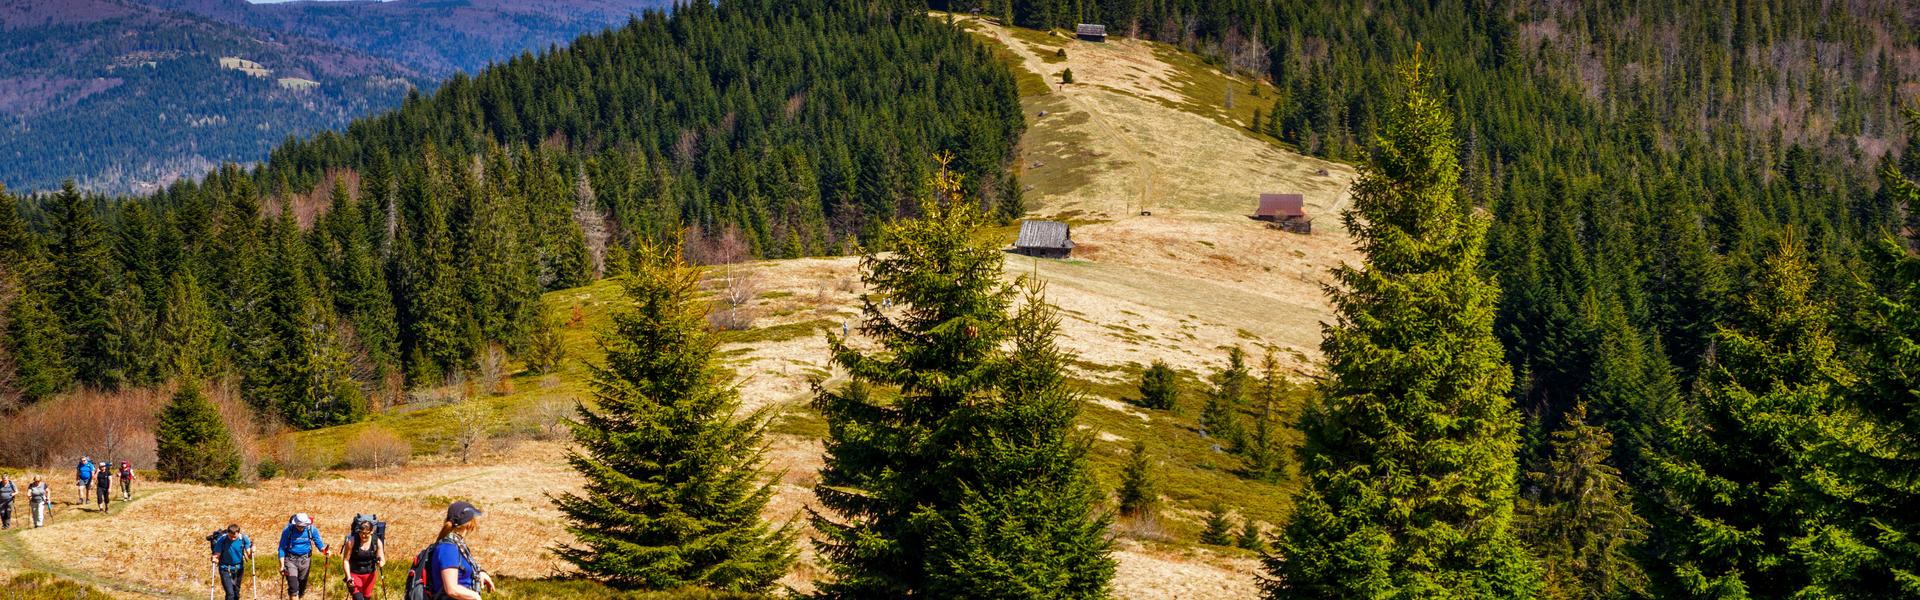 eine Lichtung auf der Spitze des Hügels, umgeben von Wäldern, einem sichtbaren Pfad und einer Hirtenhütte in der Ferne